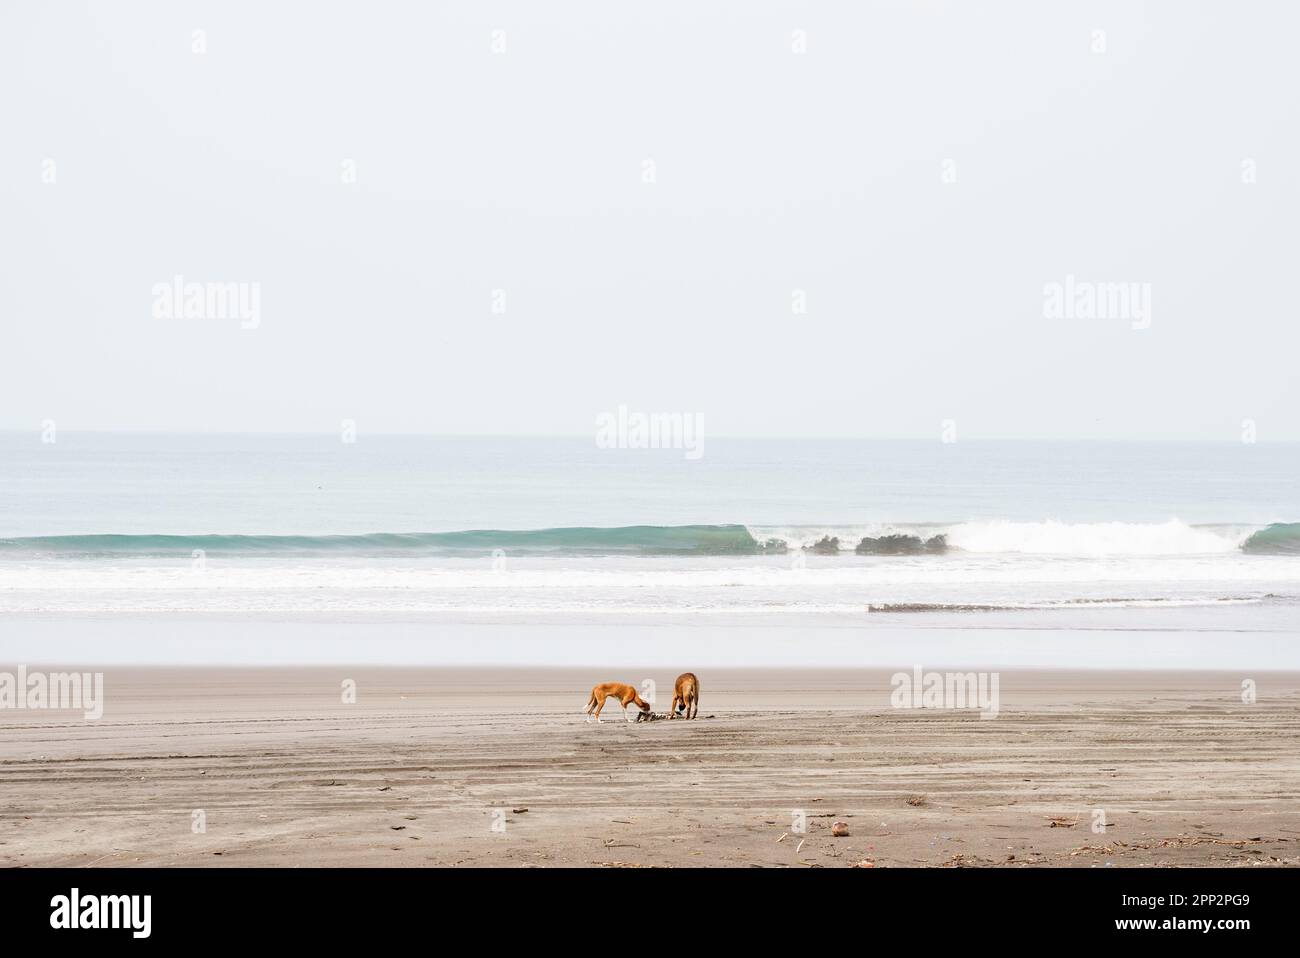 Ein paar streunende Hunde am Strand plündern und fressen den Kadaver eines toten Tieres. Ein klarer Himmel und Meereswellen sind im Hintergrund zu sehen. Stockfoto